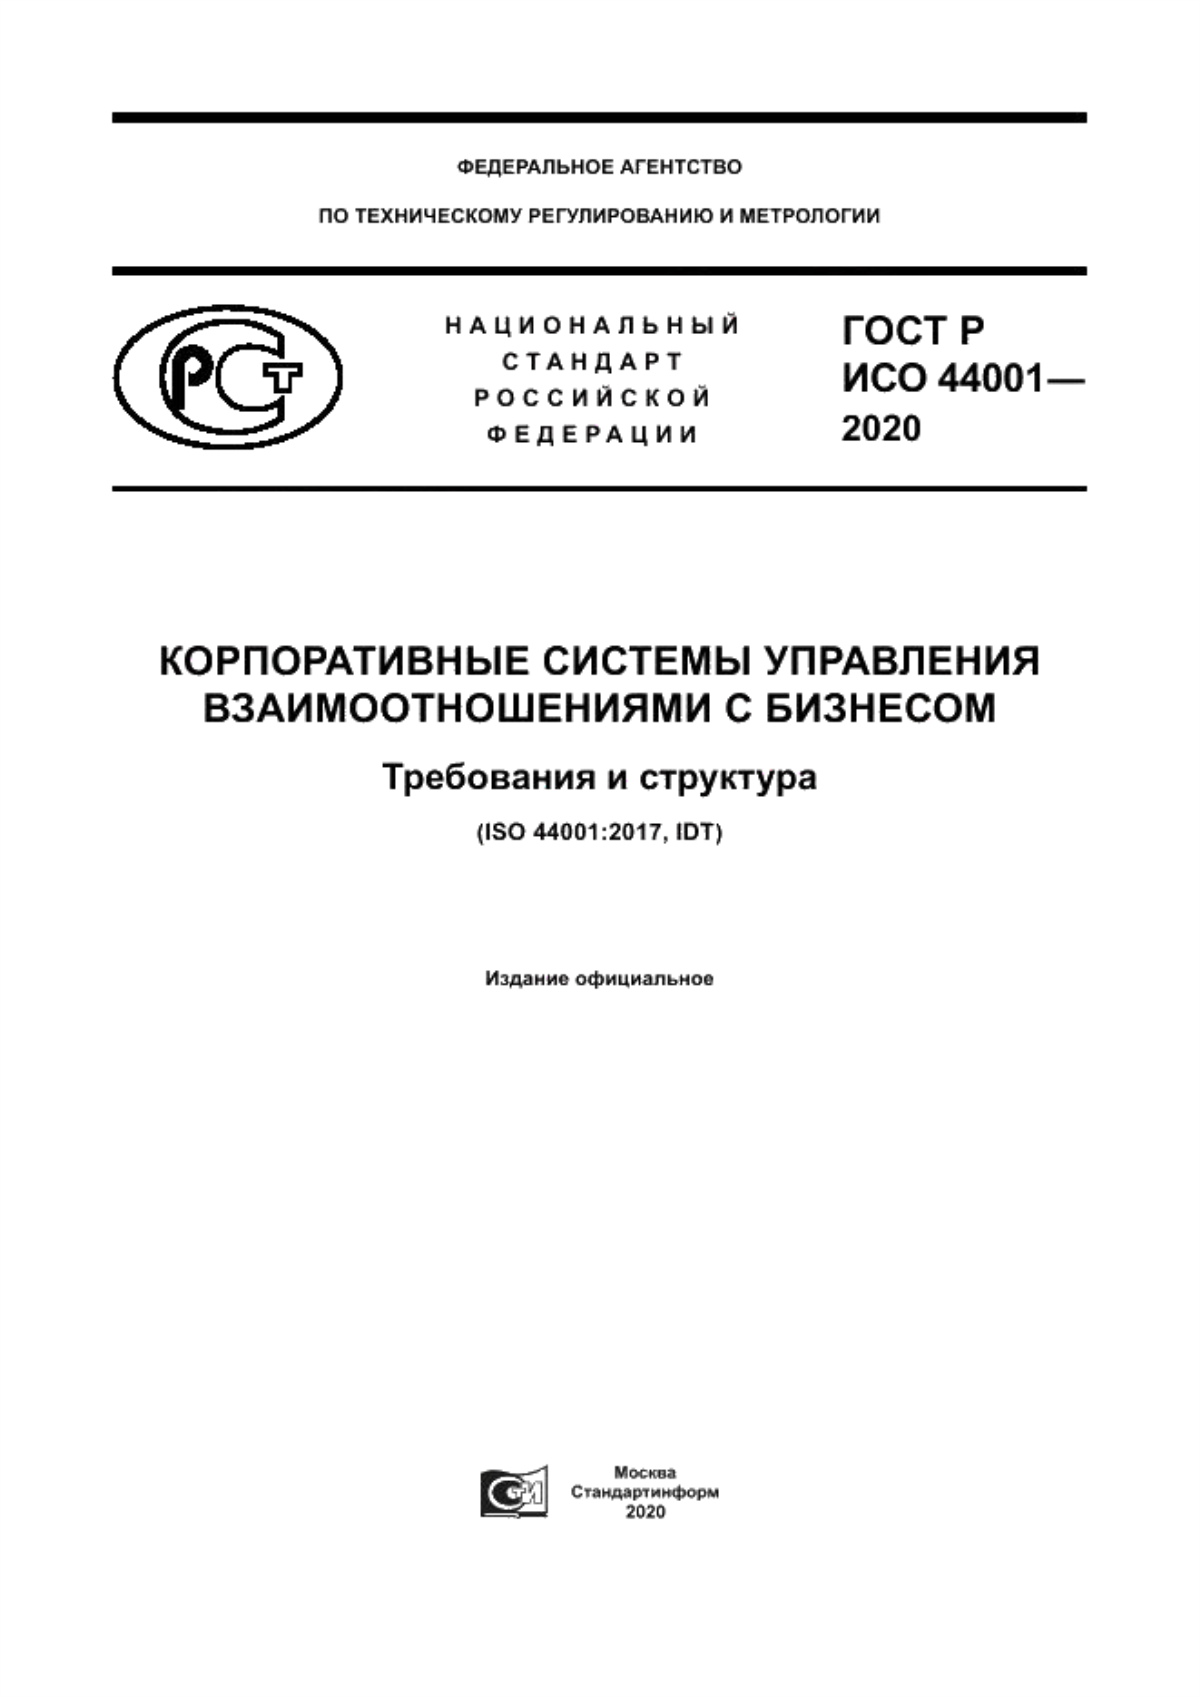 ГОСТ Р ИСО 44001-2020 Корпоративные системы управления взаимоотношениями с бизнесом. Требования и структура